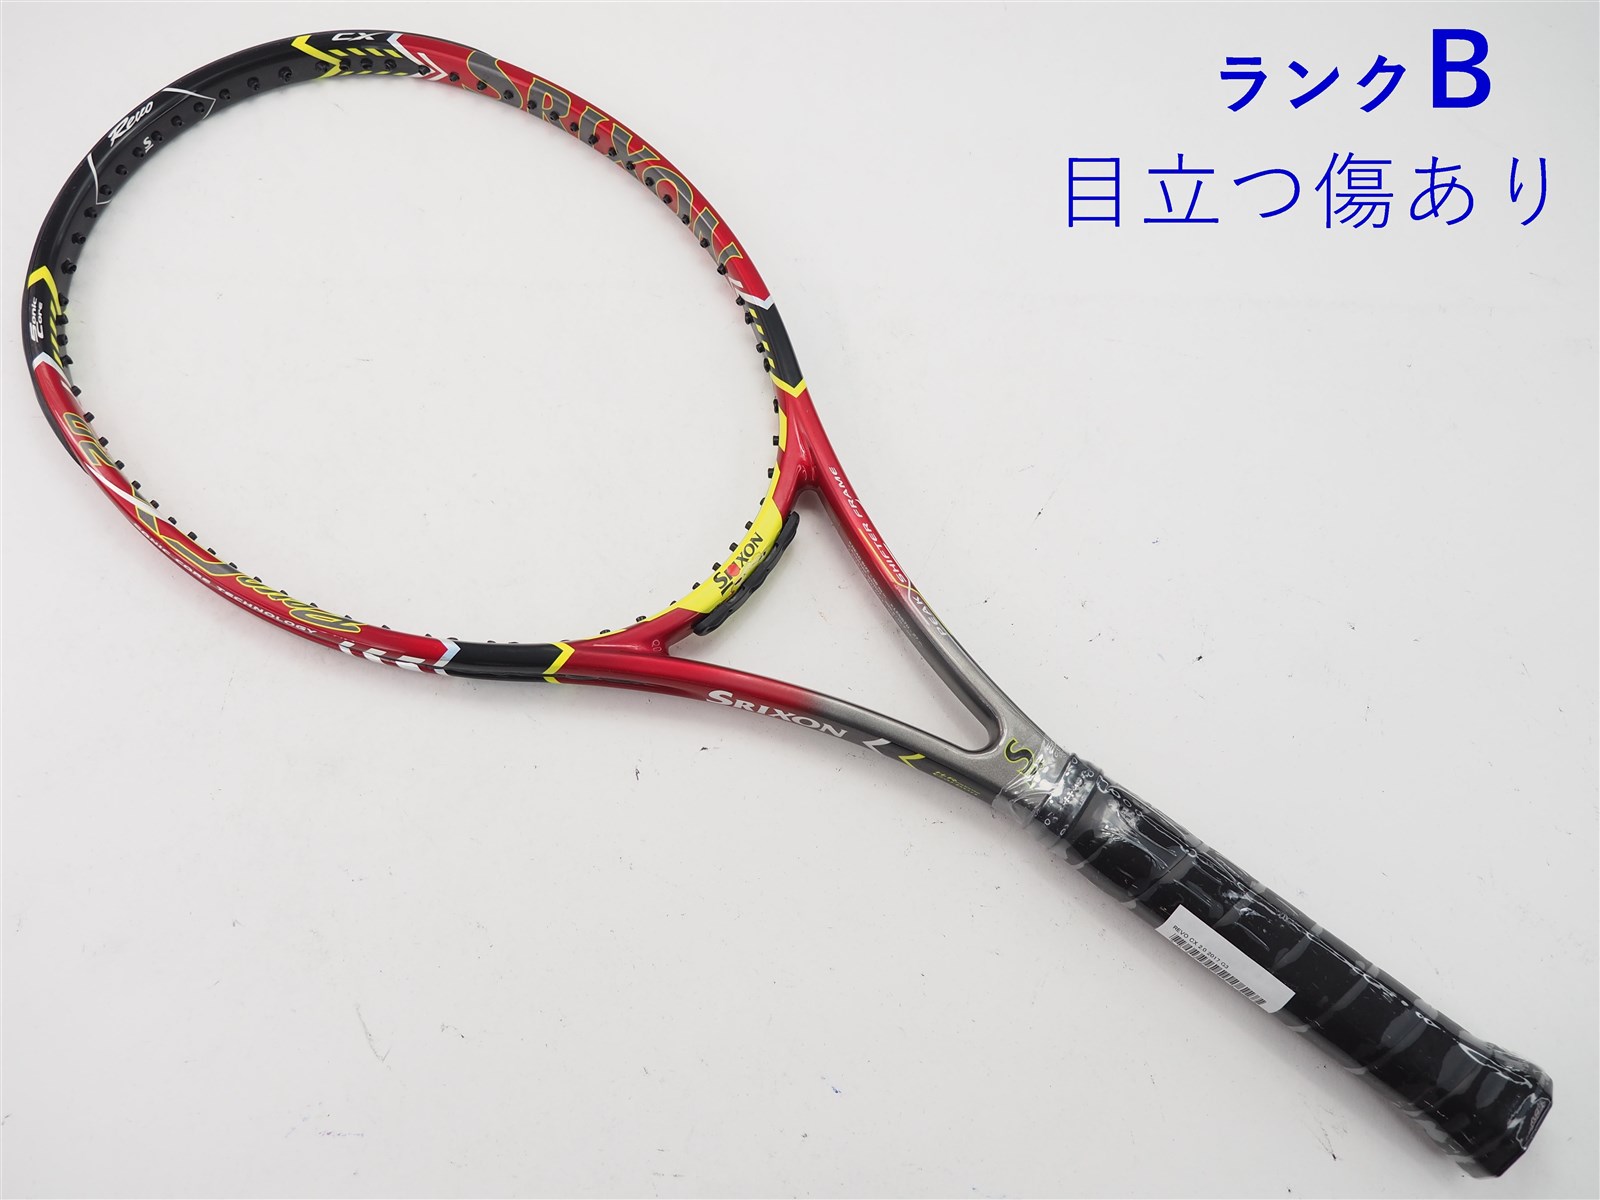 テニスラケット スリクソン レヴォ CS 10.0 2016年モデル (G1)SRIXON REVO CS 10.0 2016